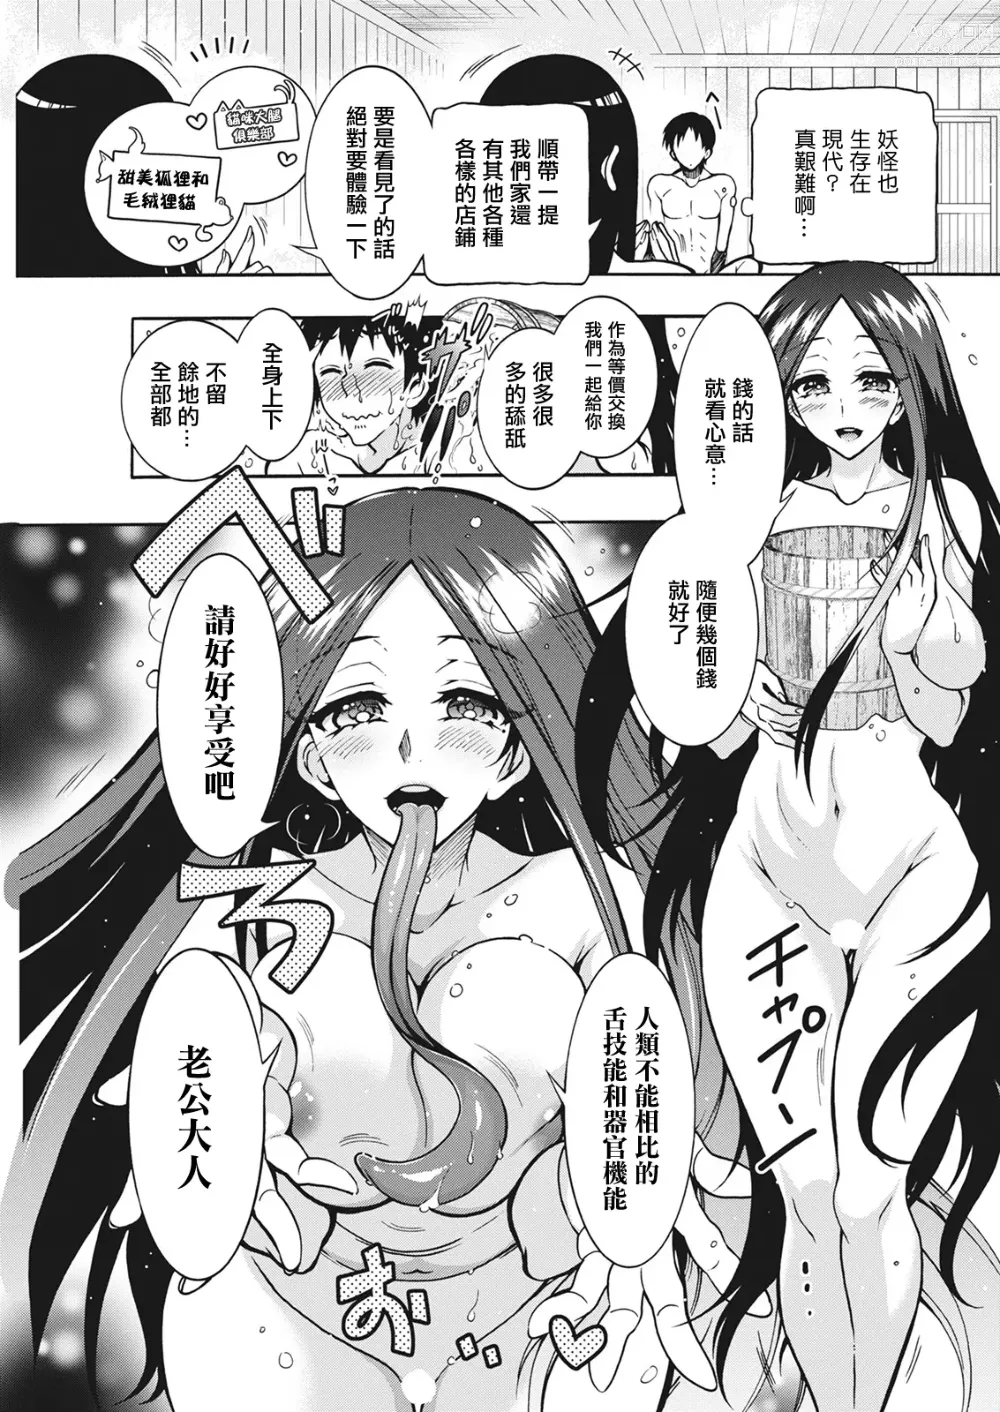 Page 7 of manga 妖怪HHH